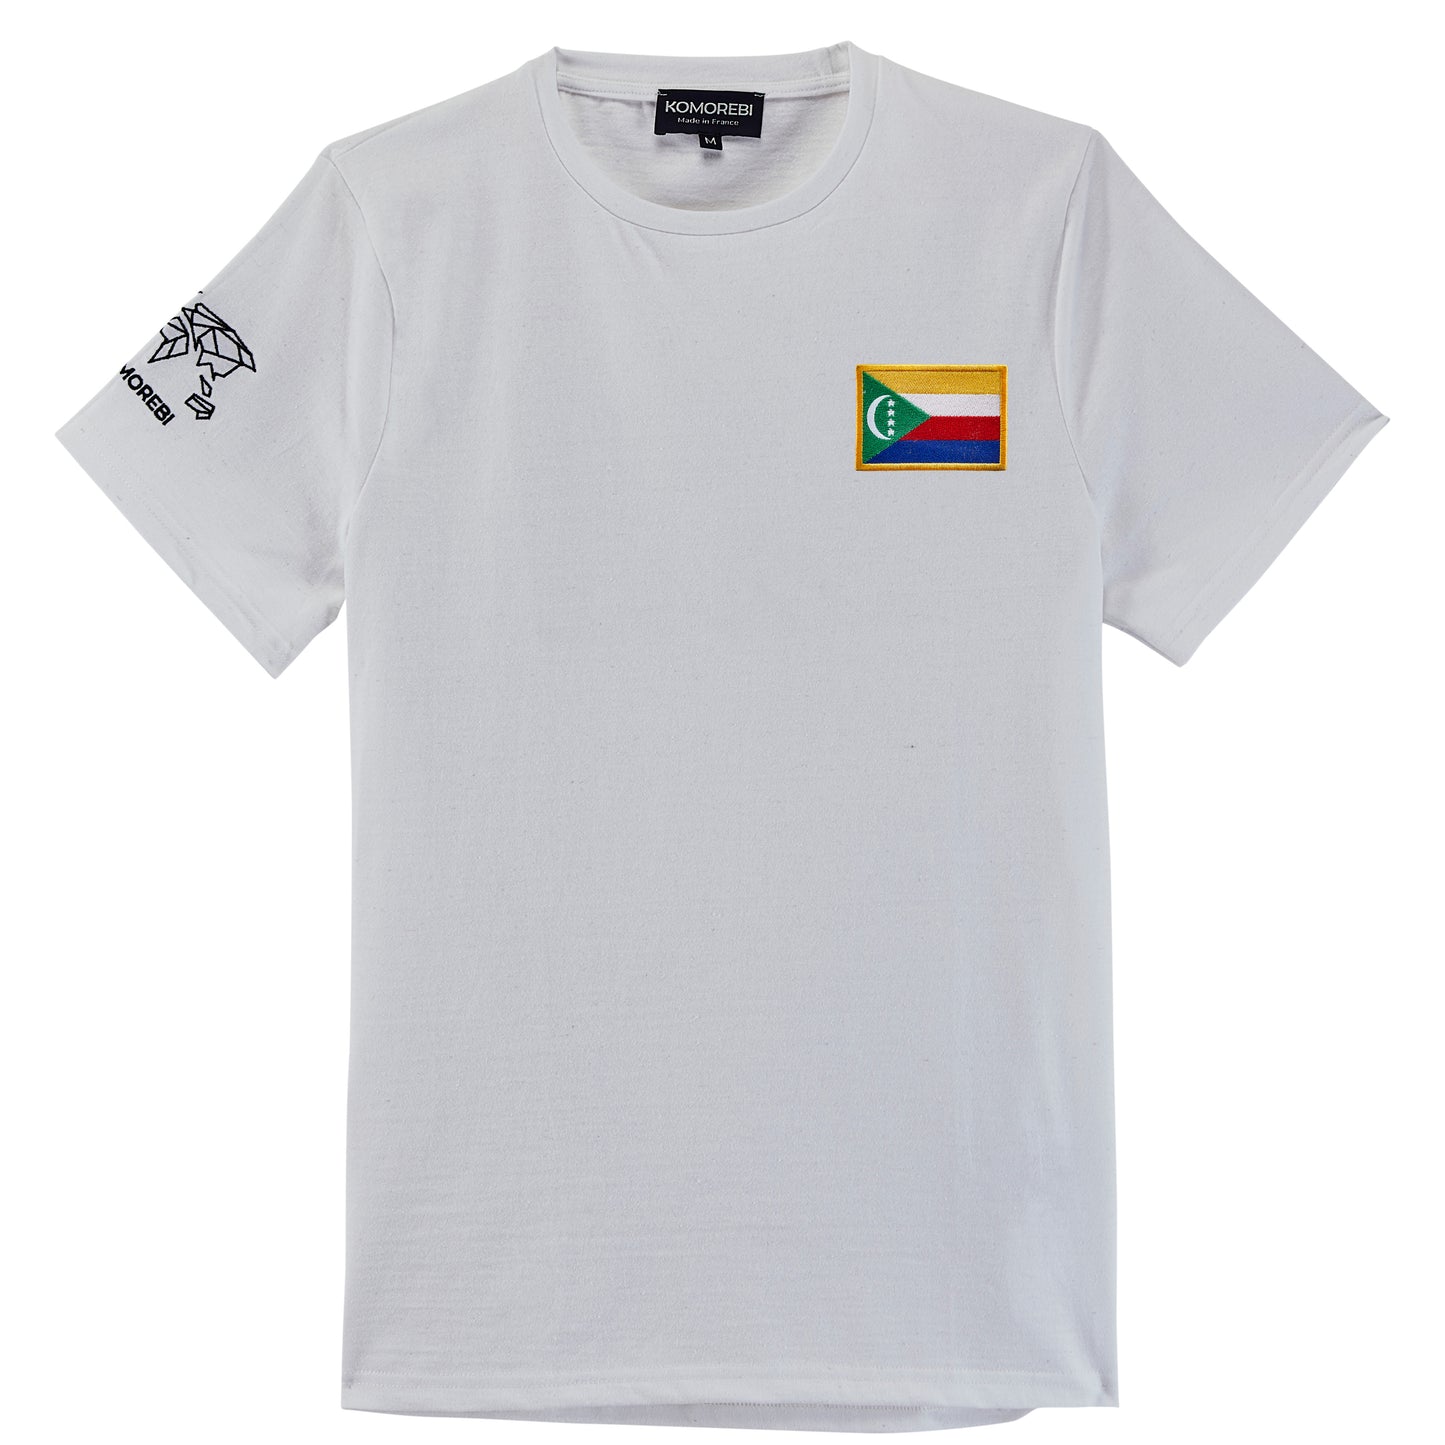 Comores • T-shirt